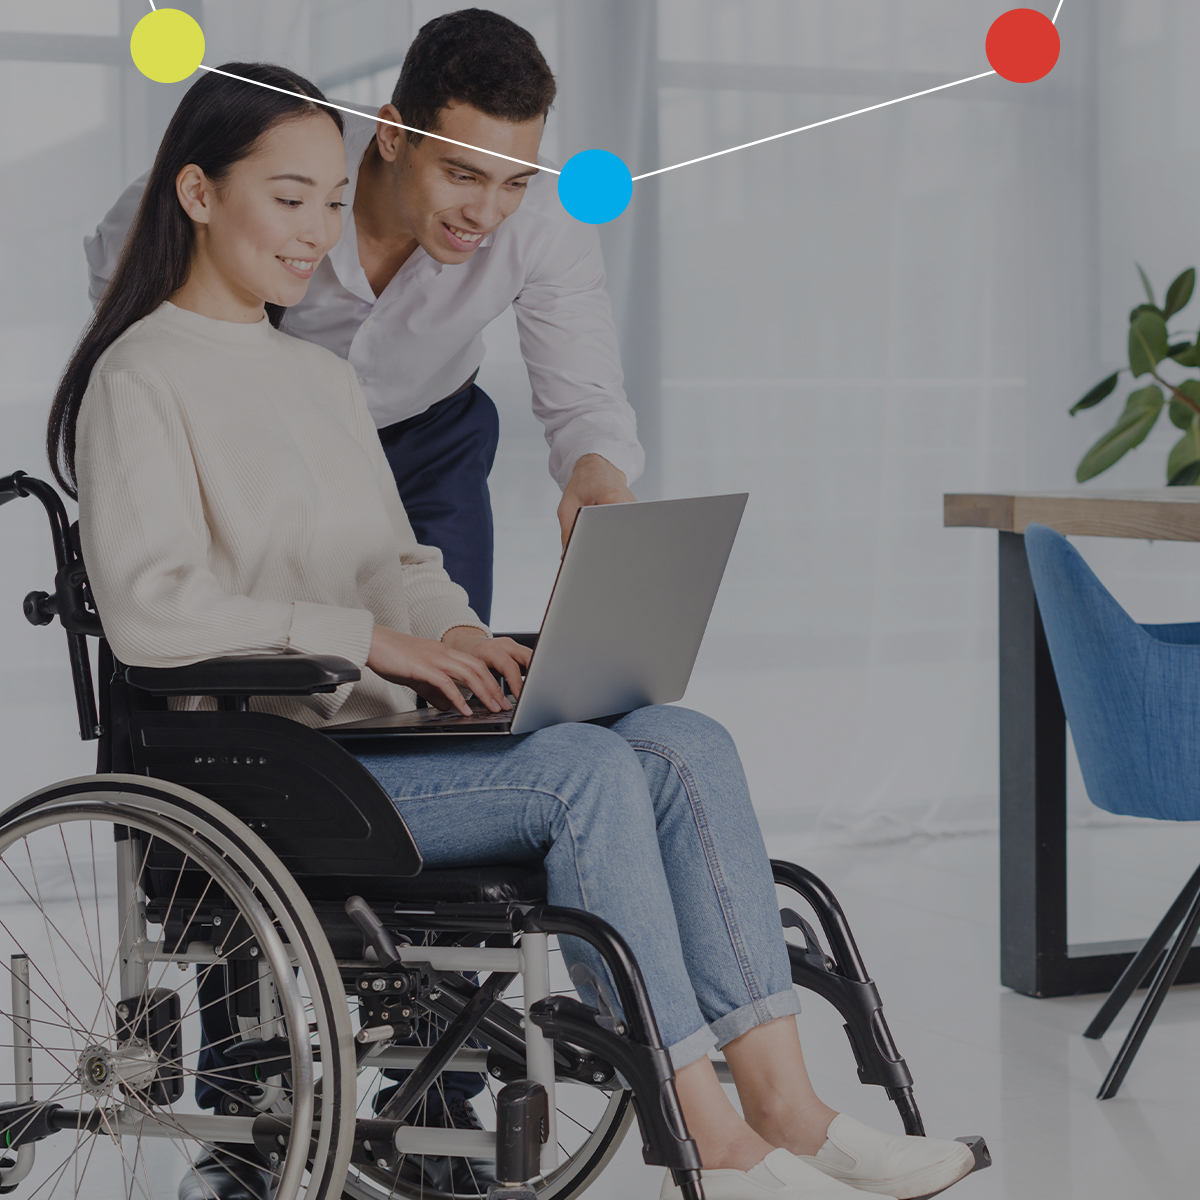 inclusione lavorativa delle persone con disabilità